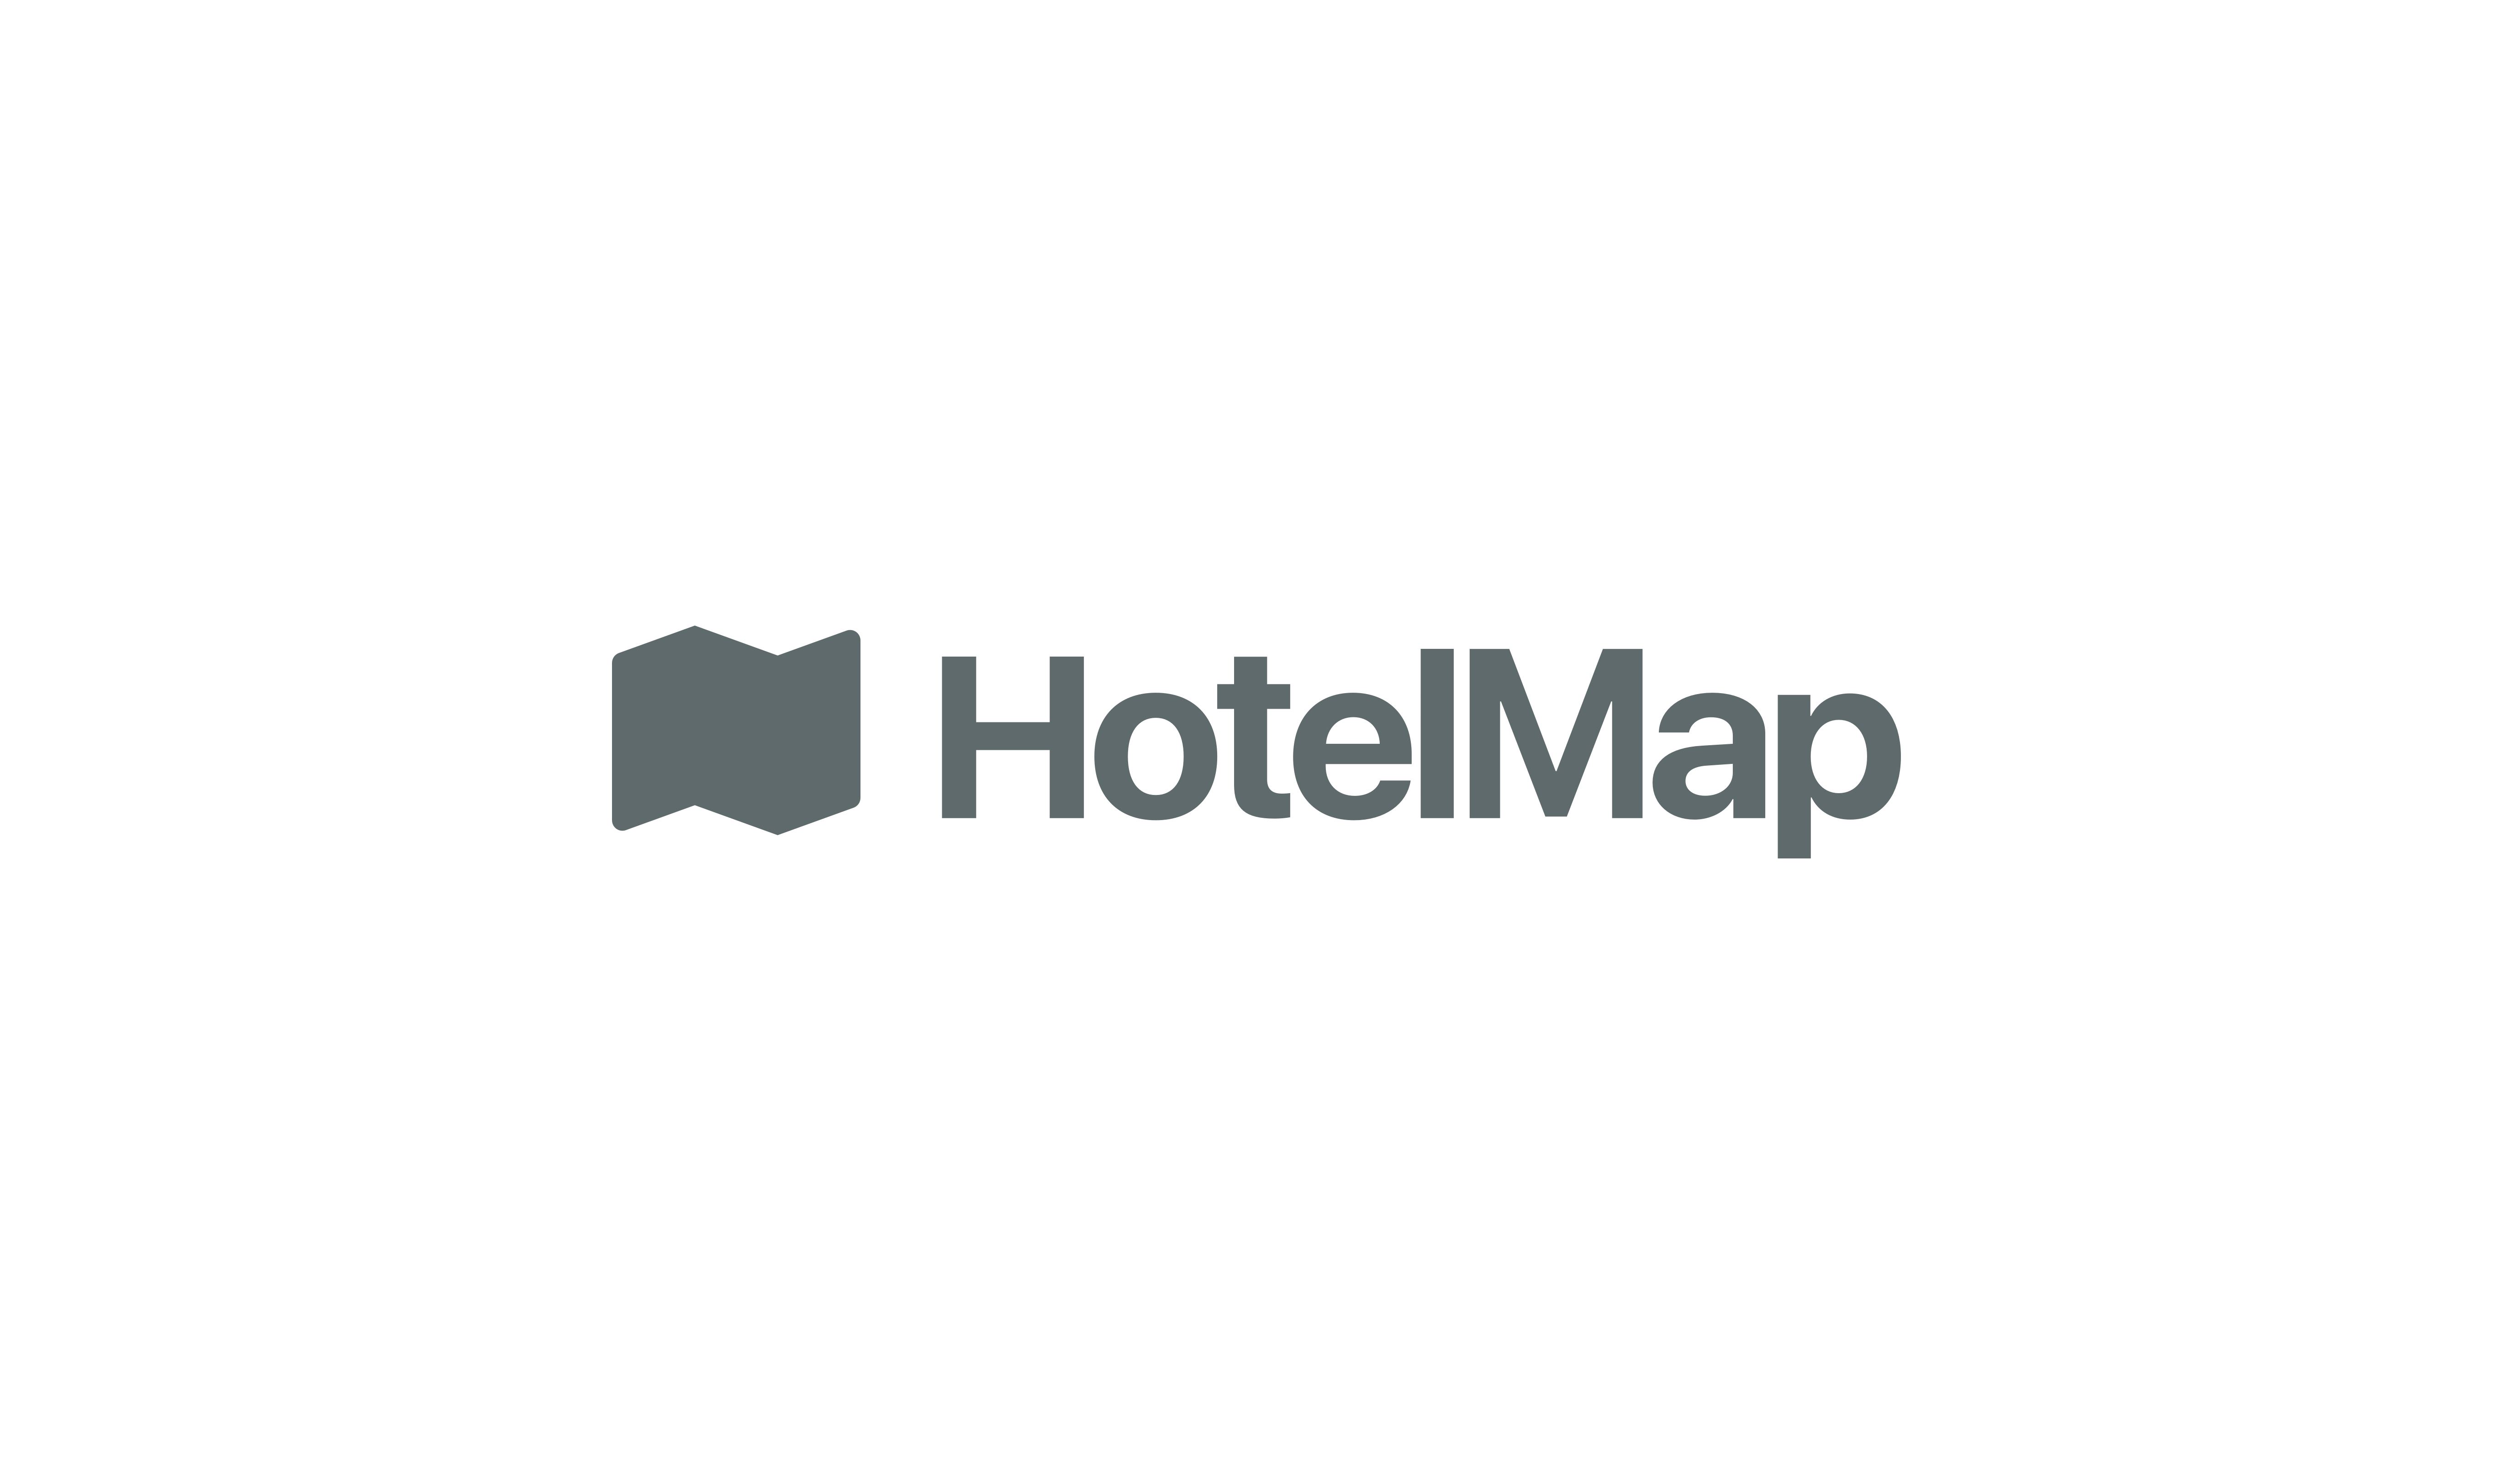 HotelMap